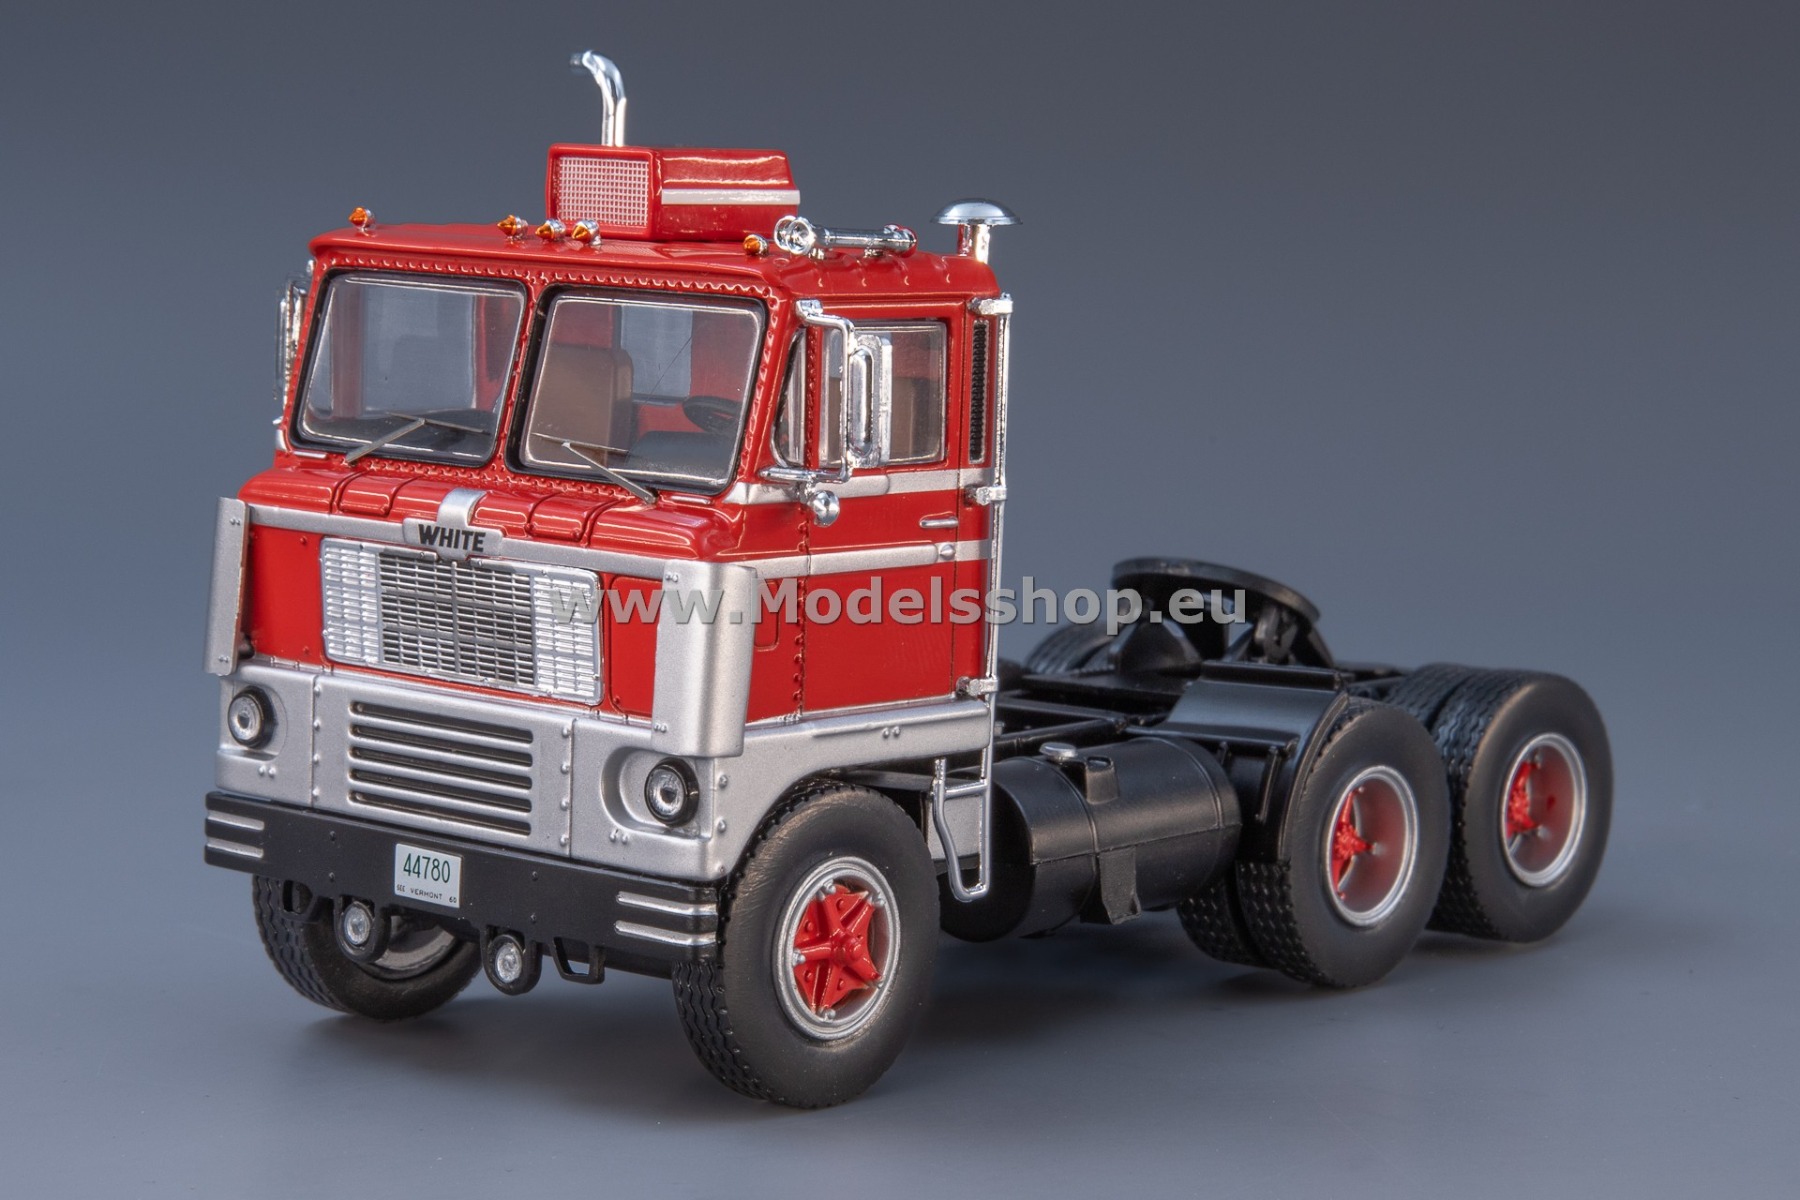 IXO TR170.22 White 7400 tractor truck, 1960 /red - silver/